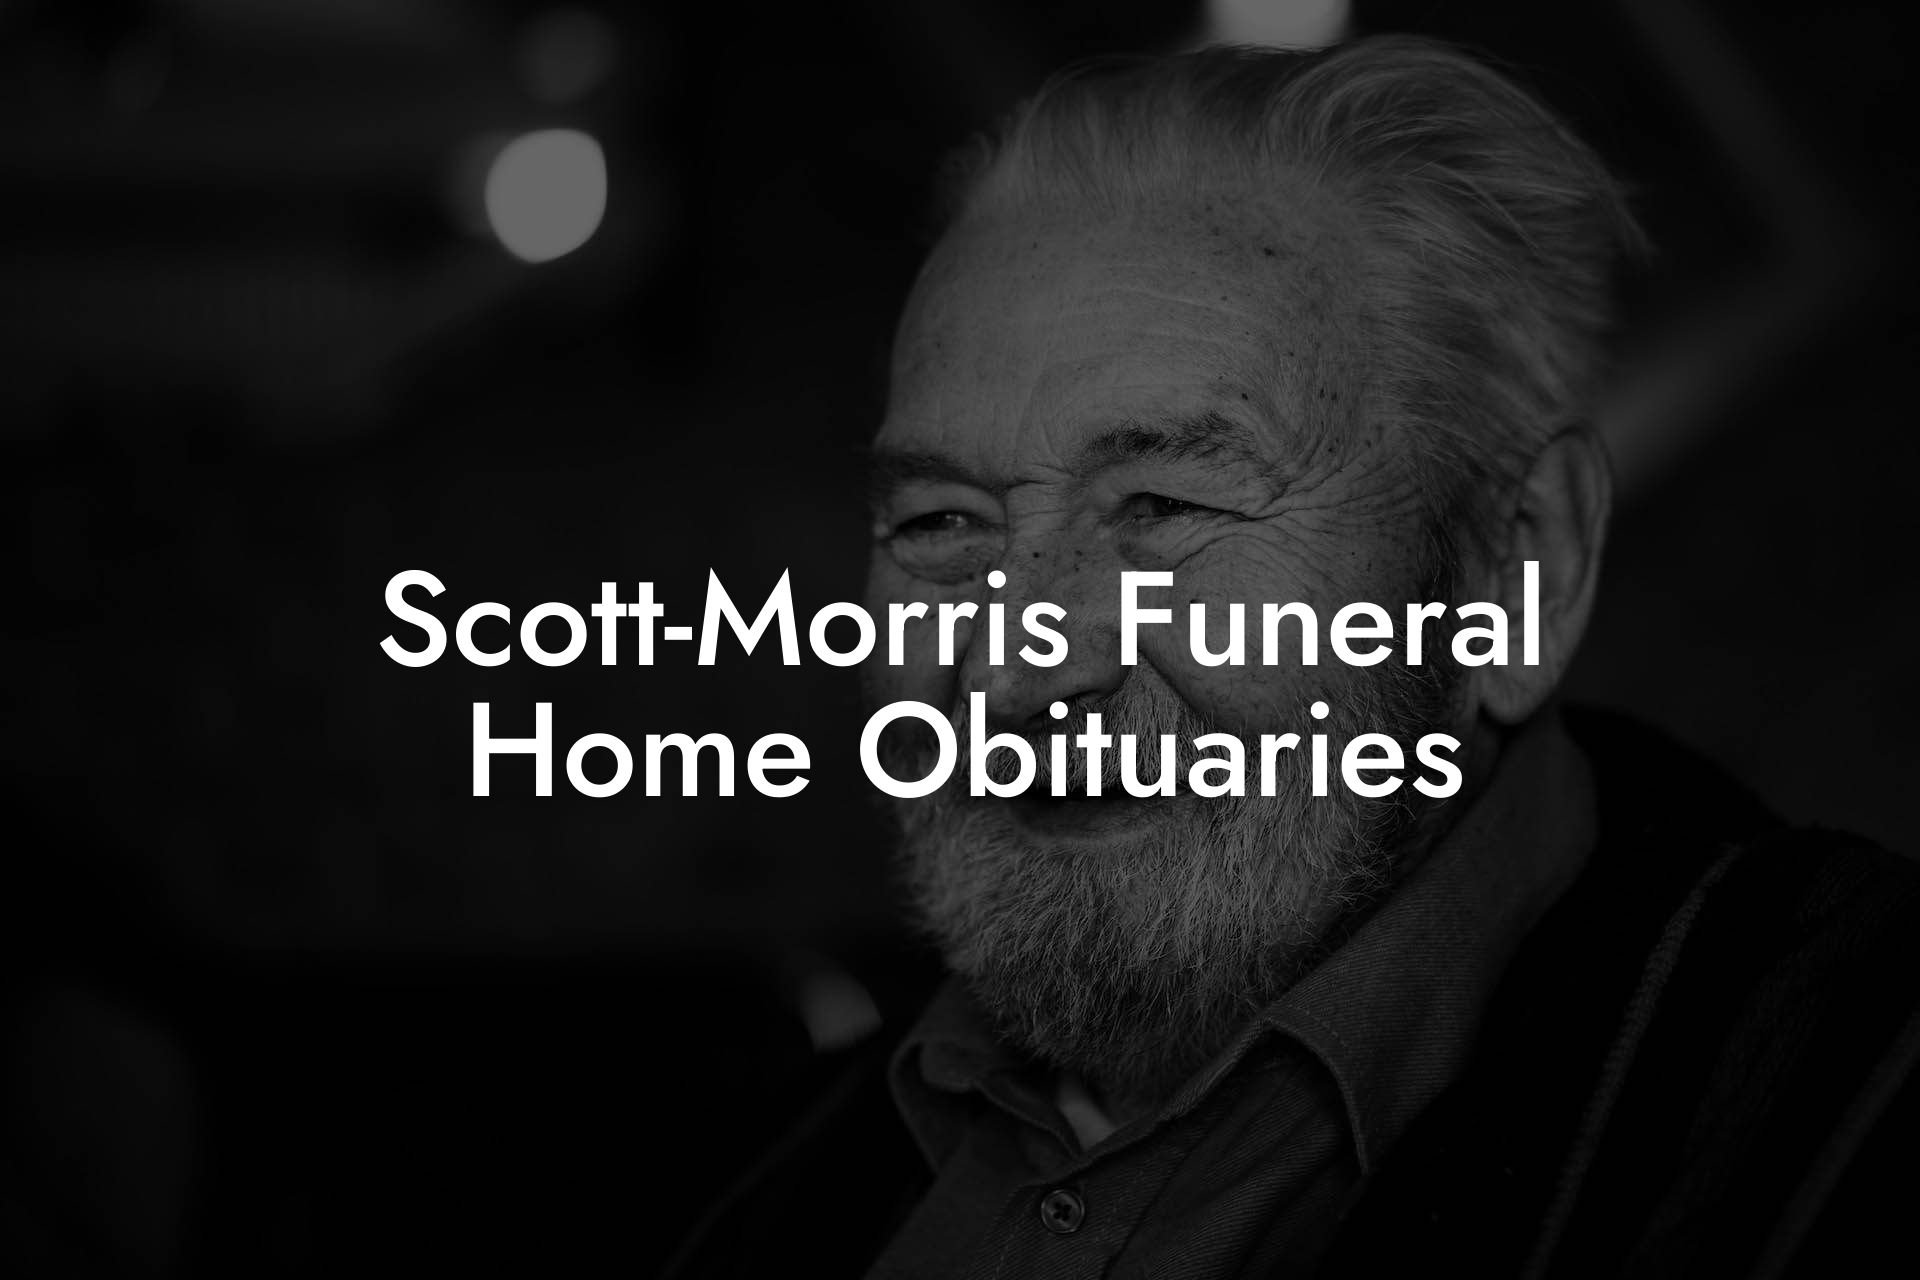 Scott-Morris Funeral Home Obituaries